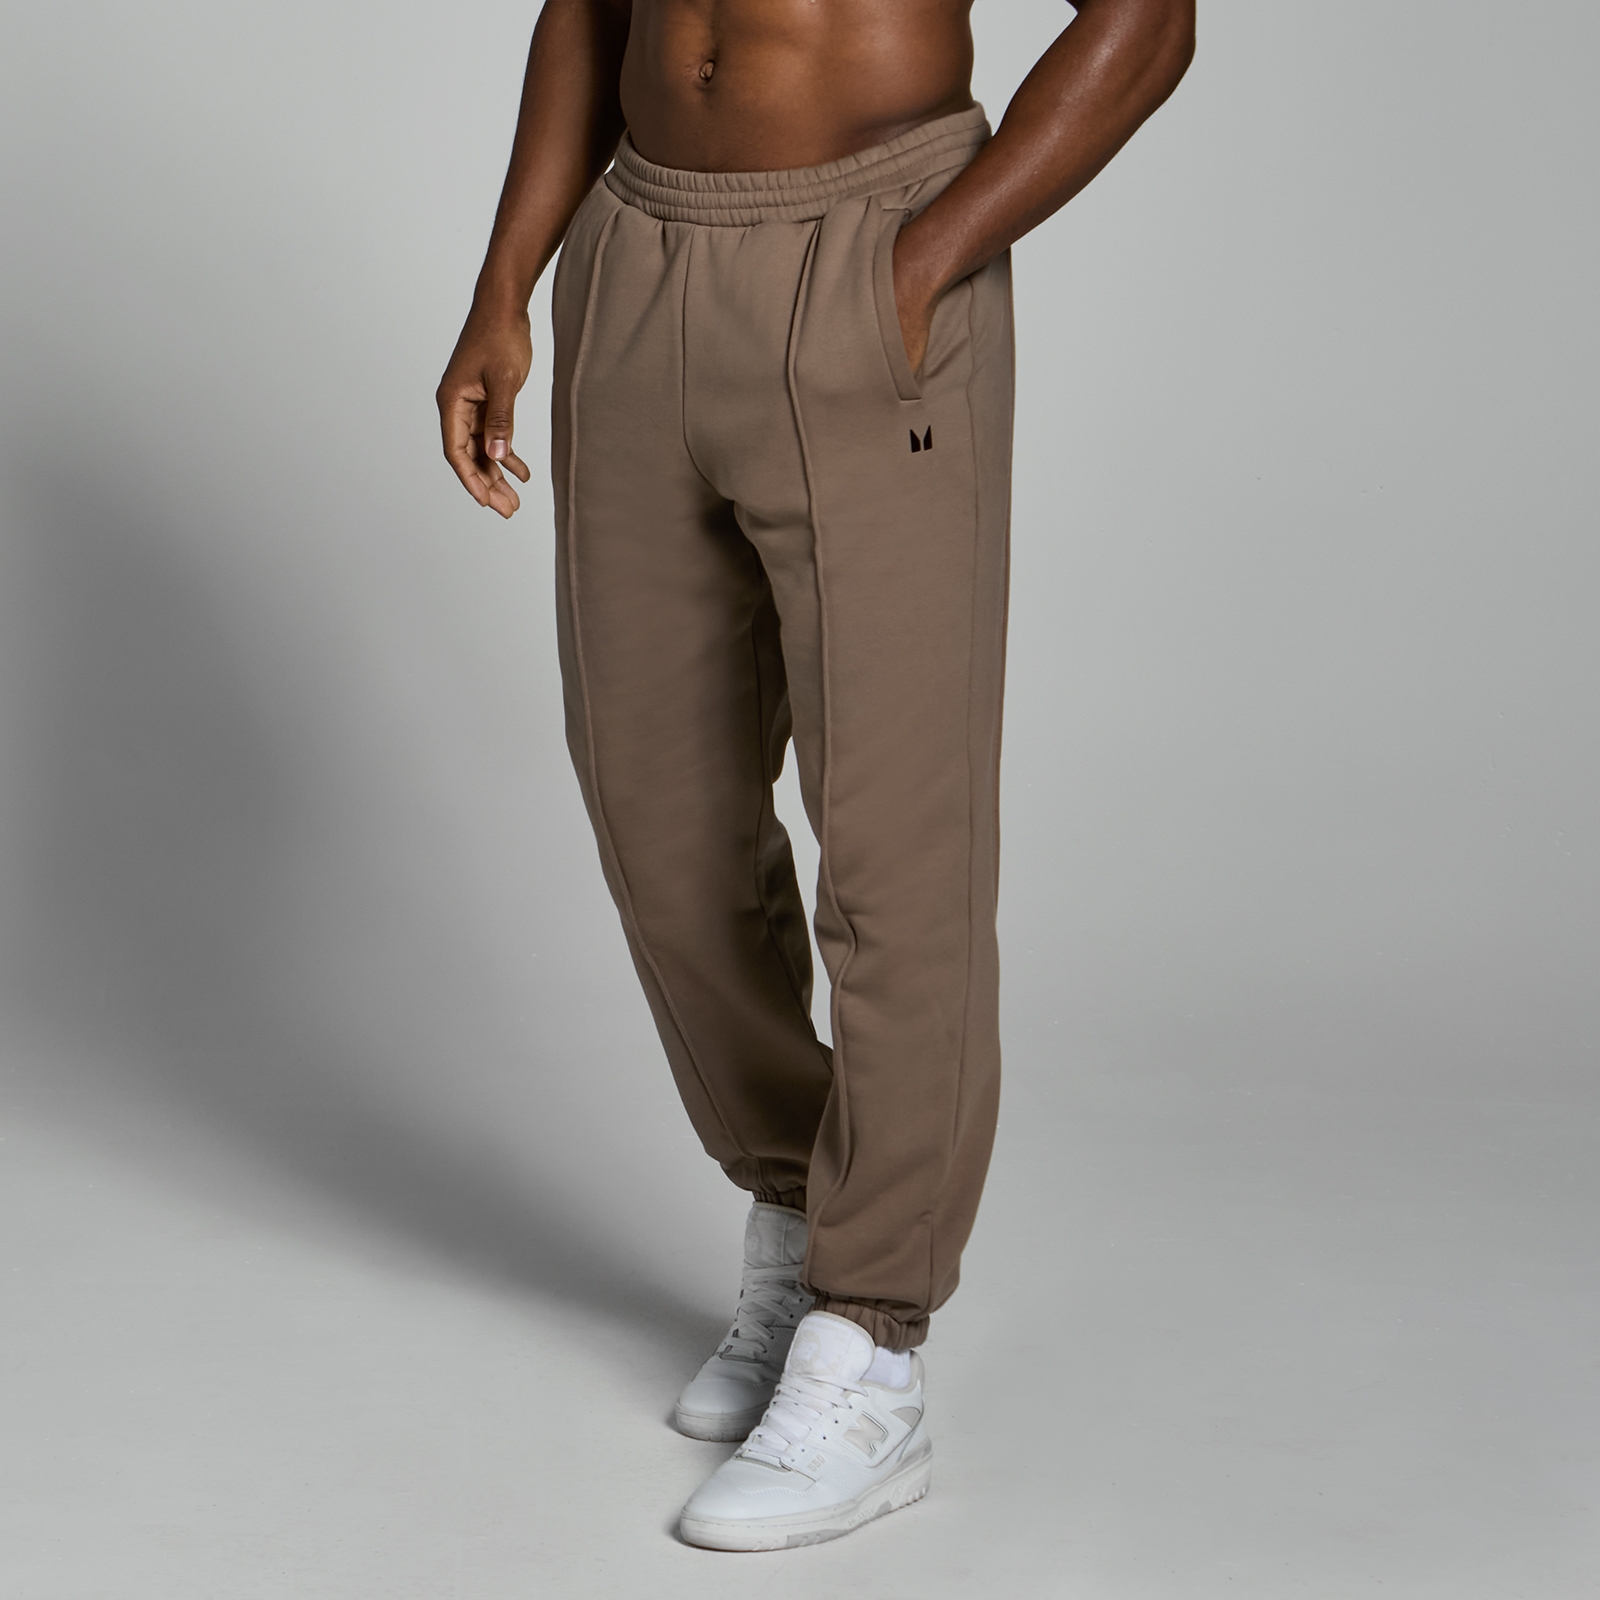 Image of Pantaloni da jogging pesanti oversize MP Lifestyle da uomo - Marrone chiaro - L